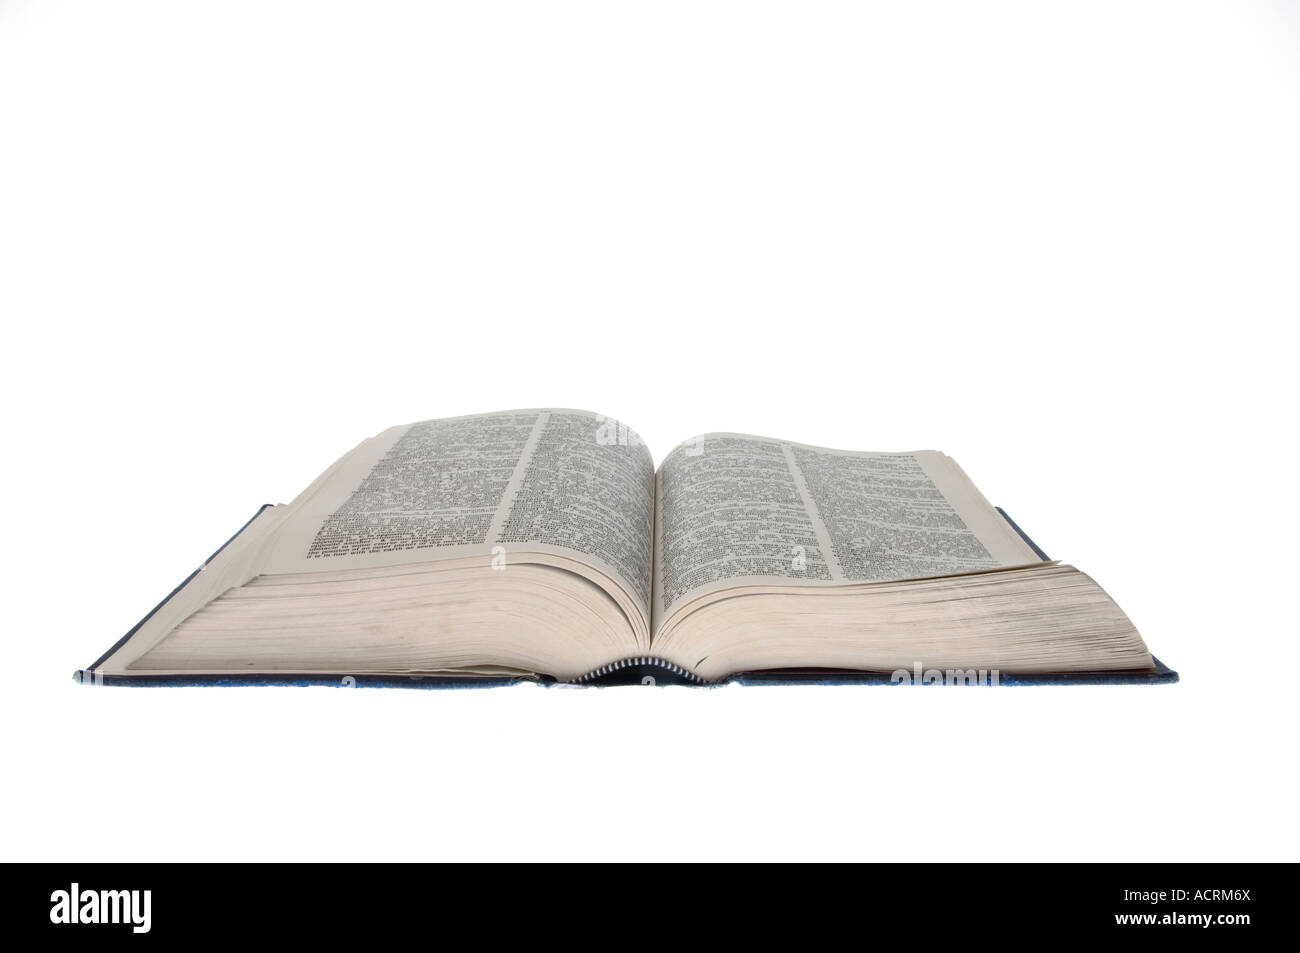 Un dictionnaire ouvert sur une surface blanche - Un livre ouvert Banque D'Images